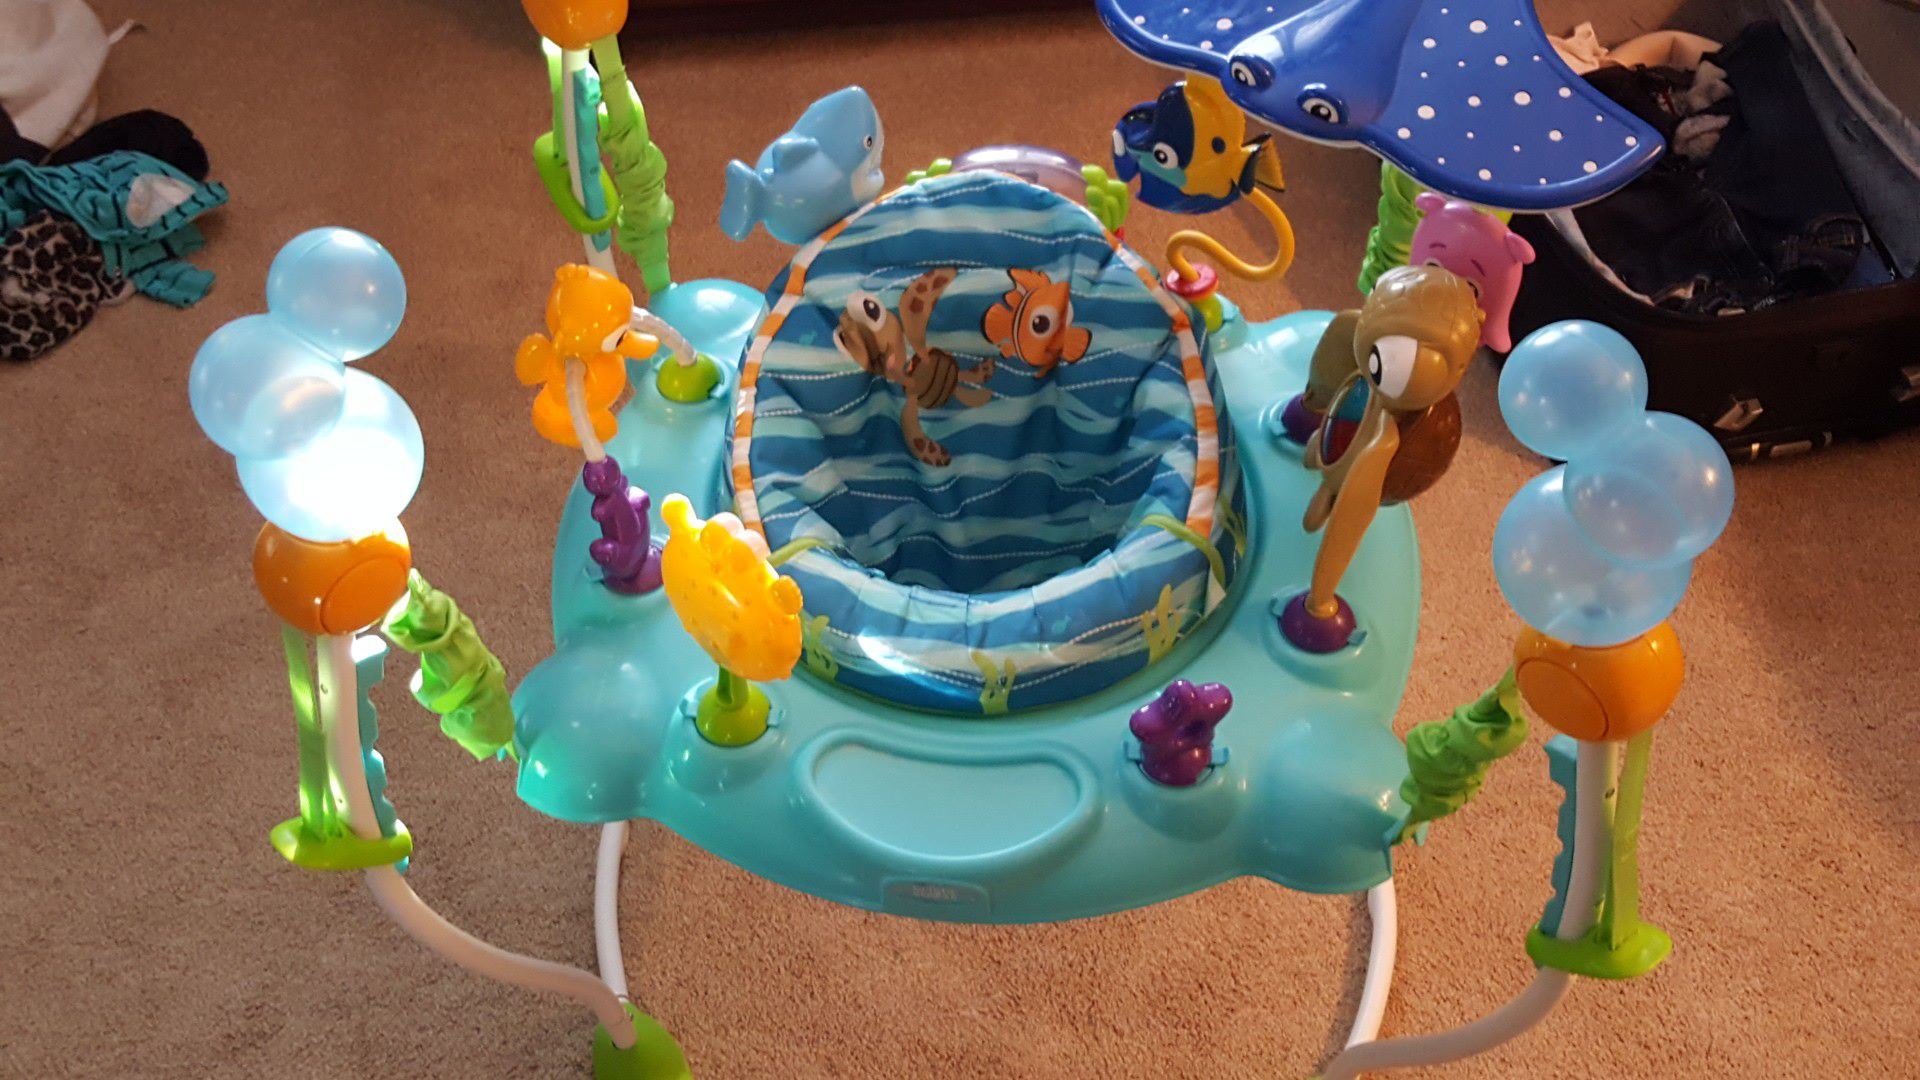 Disney Finding Nemo Sea of Activities Bouncer